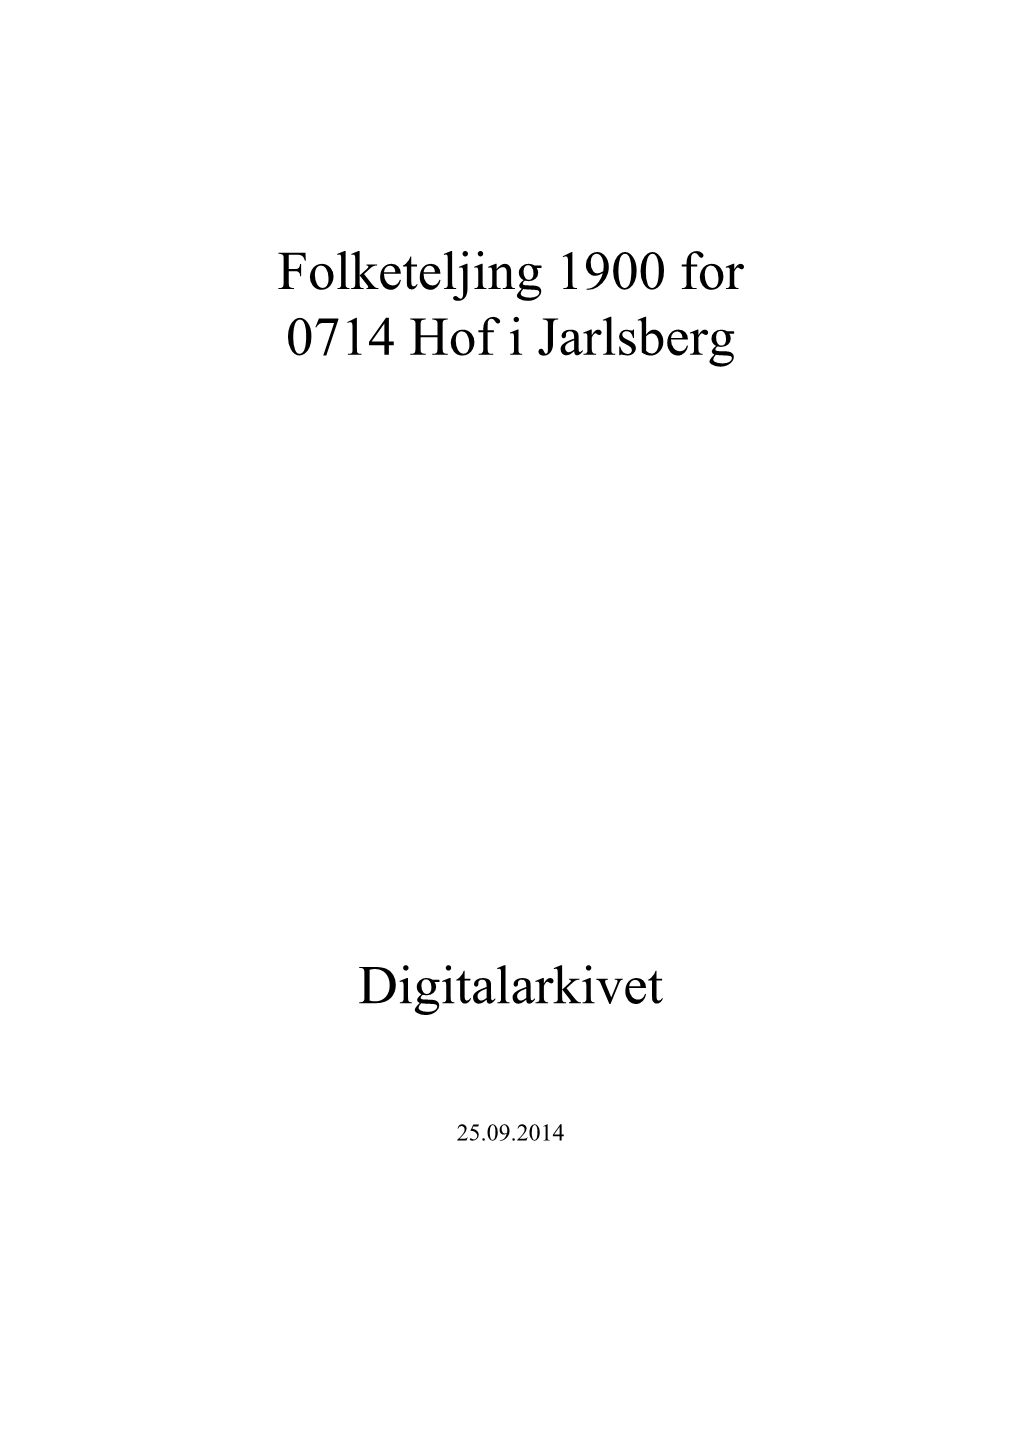 Folketeljing 1900 for 0714 Hof I Jarlsberg Digitalarkivet